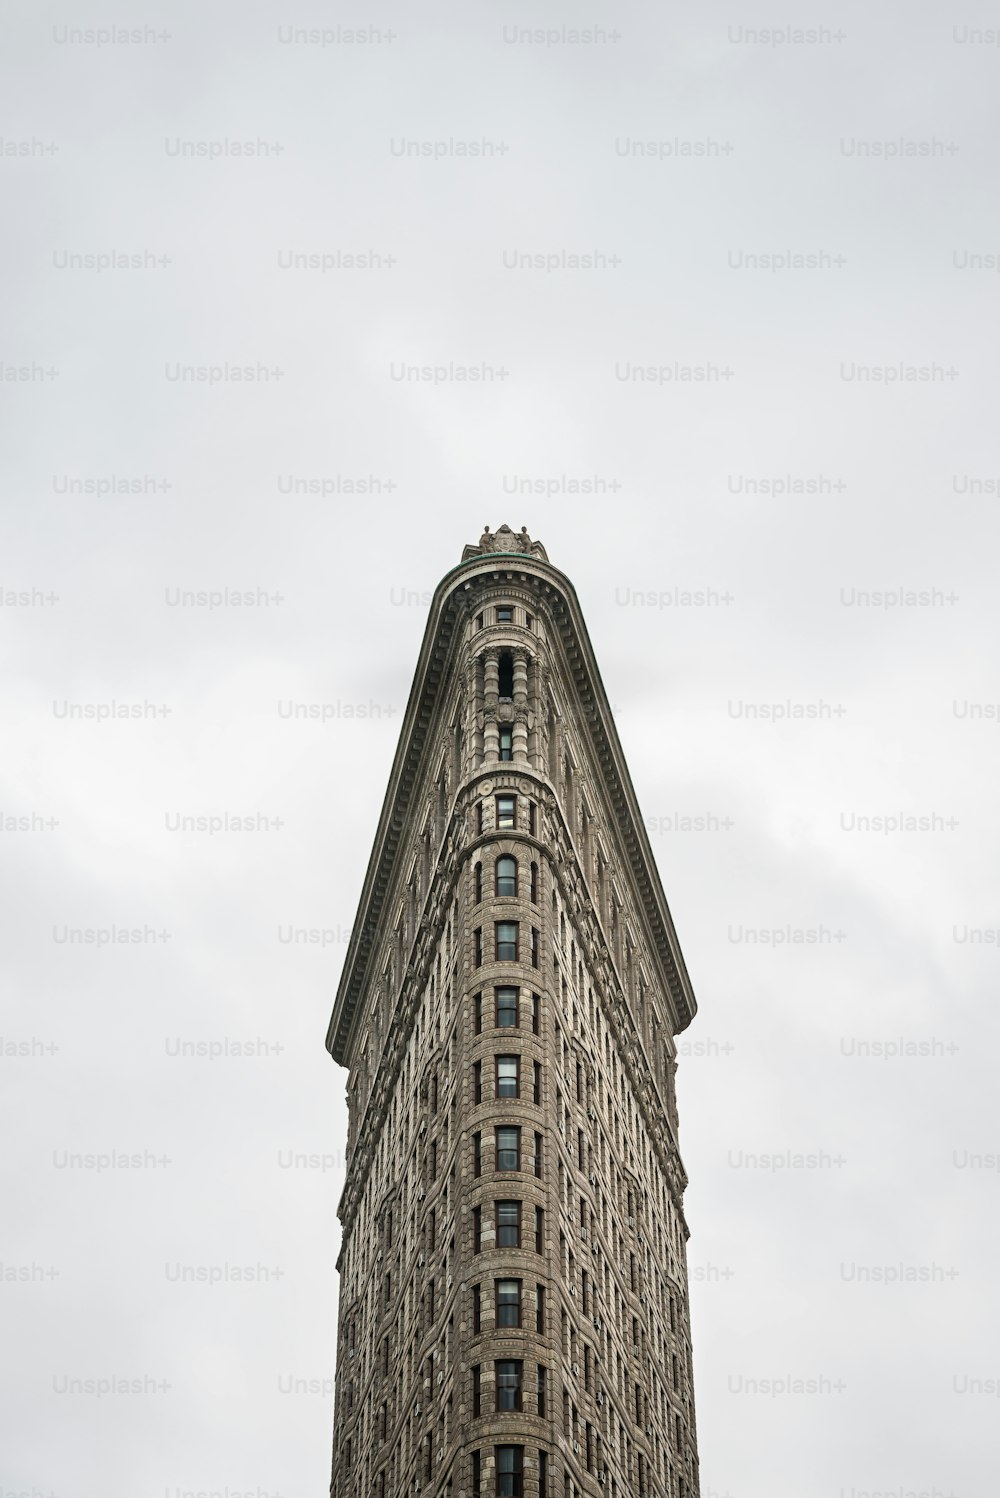 Vista frontal do edifício Flatiron em Nova York. Originalmente conhecido como o Fuller Building, foi concluído em 1902 sob o projeto de Daniel Burnham de Chicago e na época tornou-se um dos edifícios mais altos da cidade e um dos dois únicos arranha-céus ao norte da 14th Street.